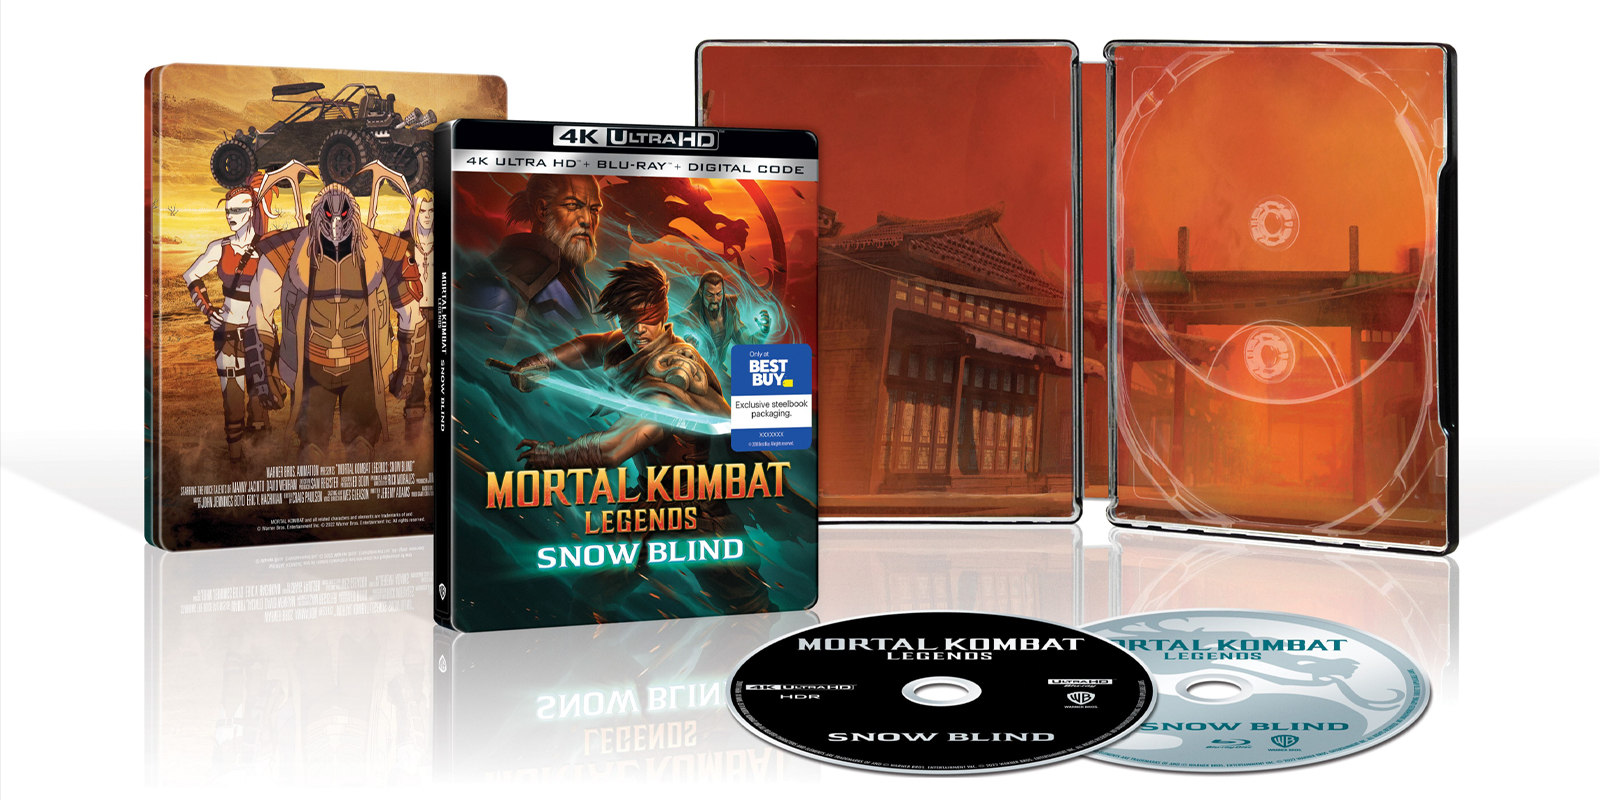 Mortal Kombat Legends: Snow Blind Ready For October Release - LRM